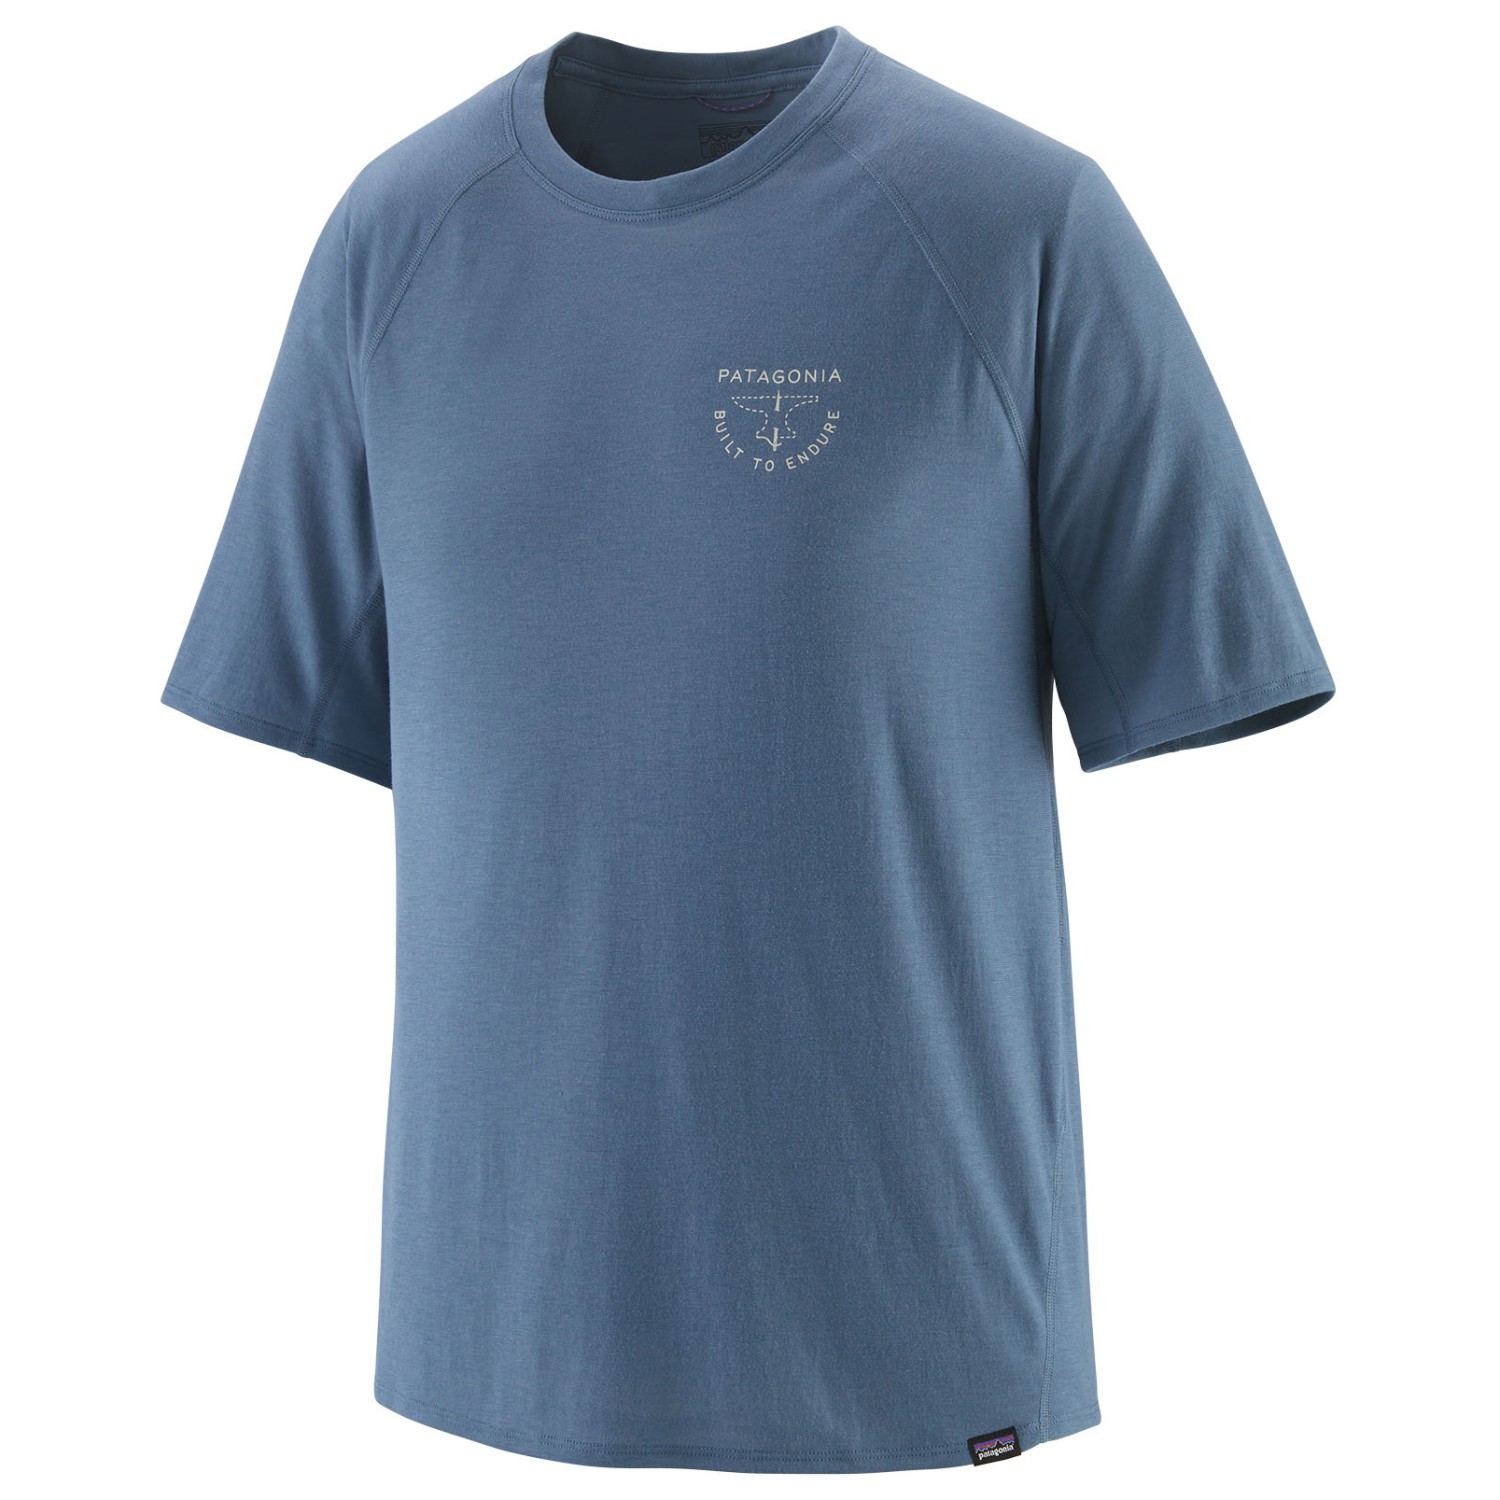 Функциональная рубашка Patagonia Cap Cool Trail Graphic Shirt, цвет Forge Mark Crest/Utility Blue